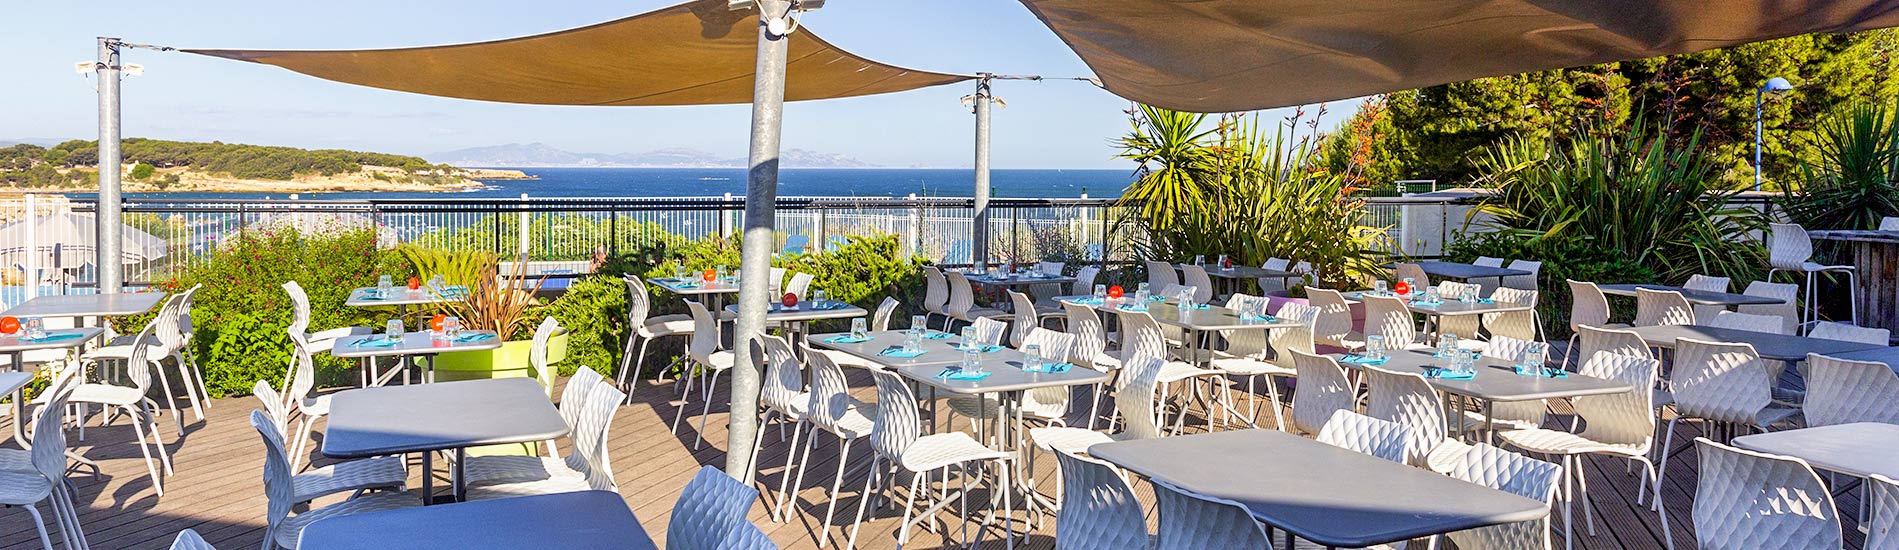 restaurant terrasse vue sur mer